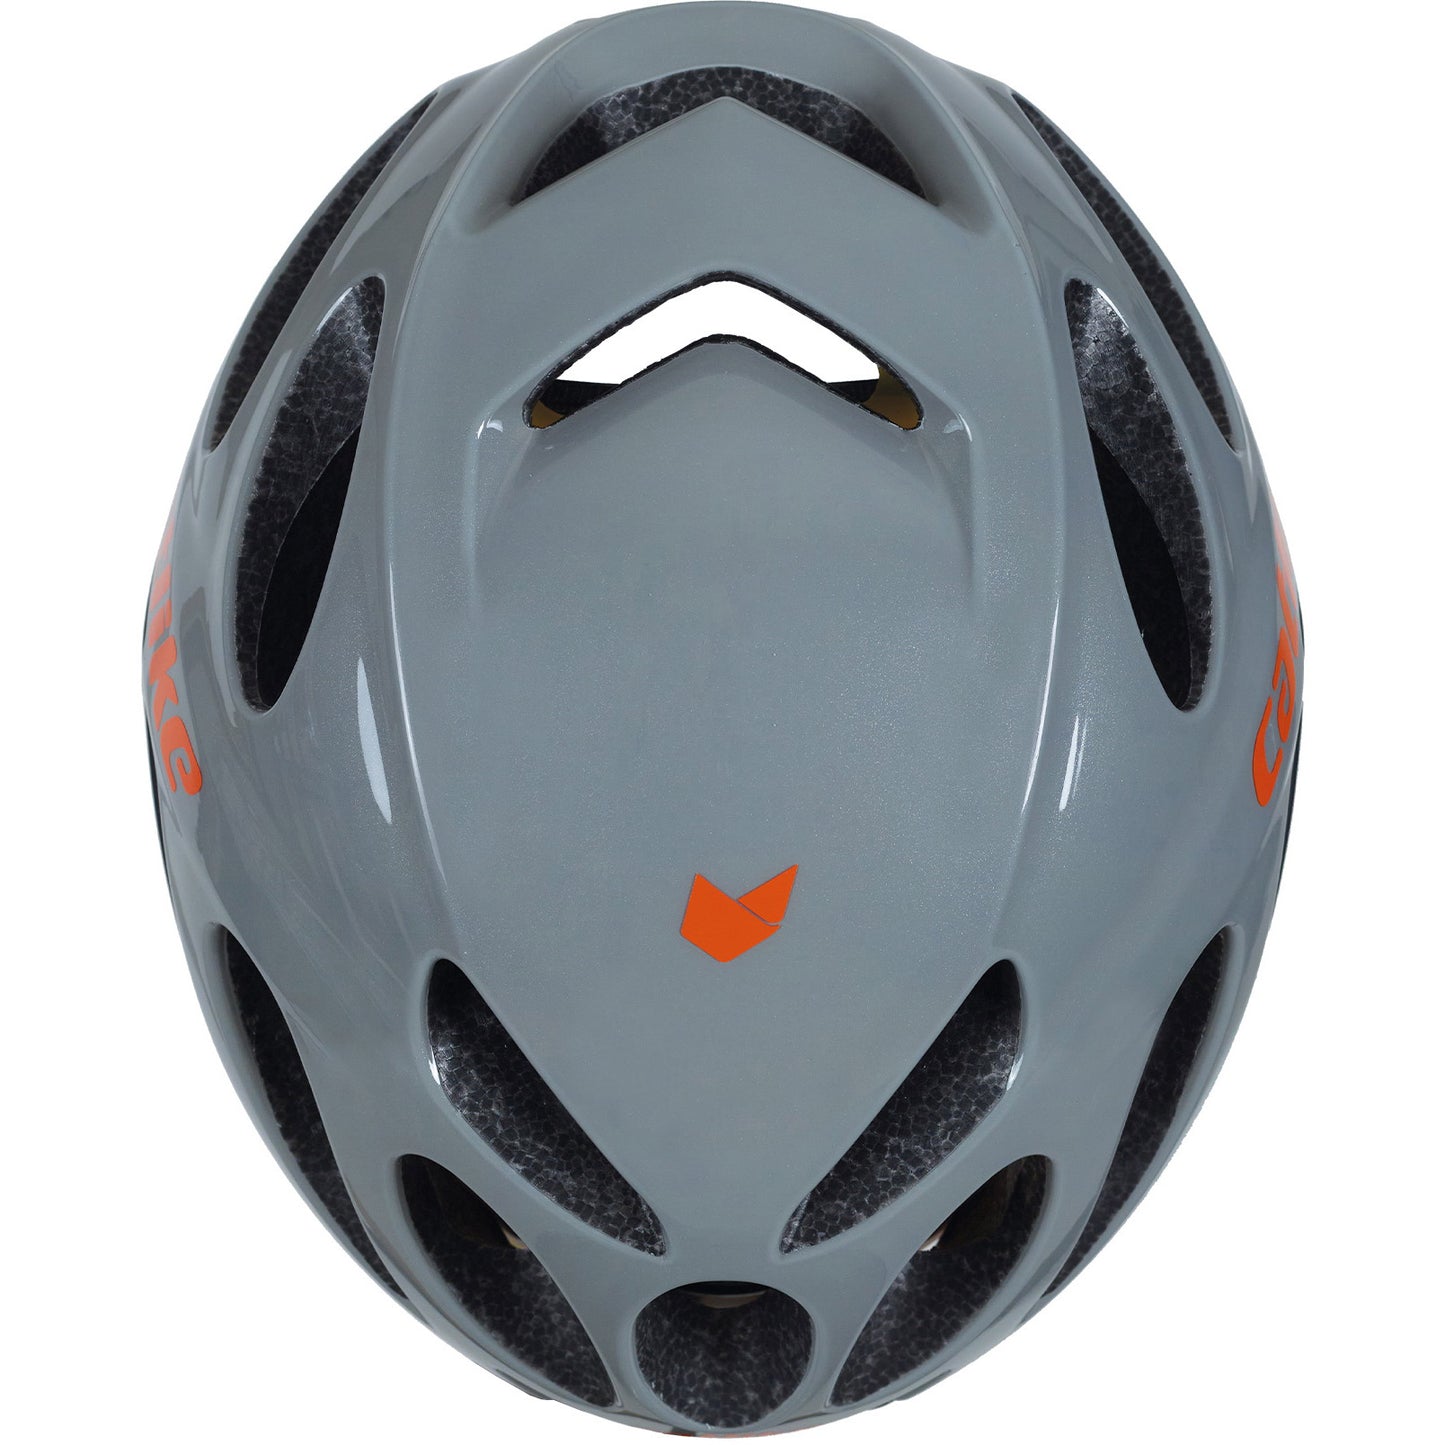 Catlike Helm Vento Mips maat L 58-60cm grey metallic